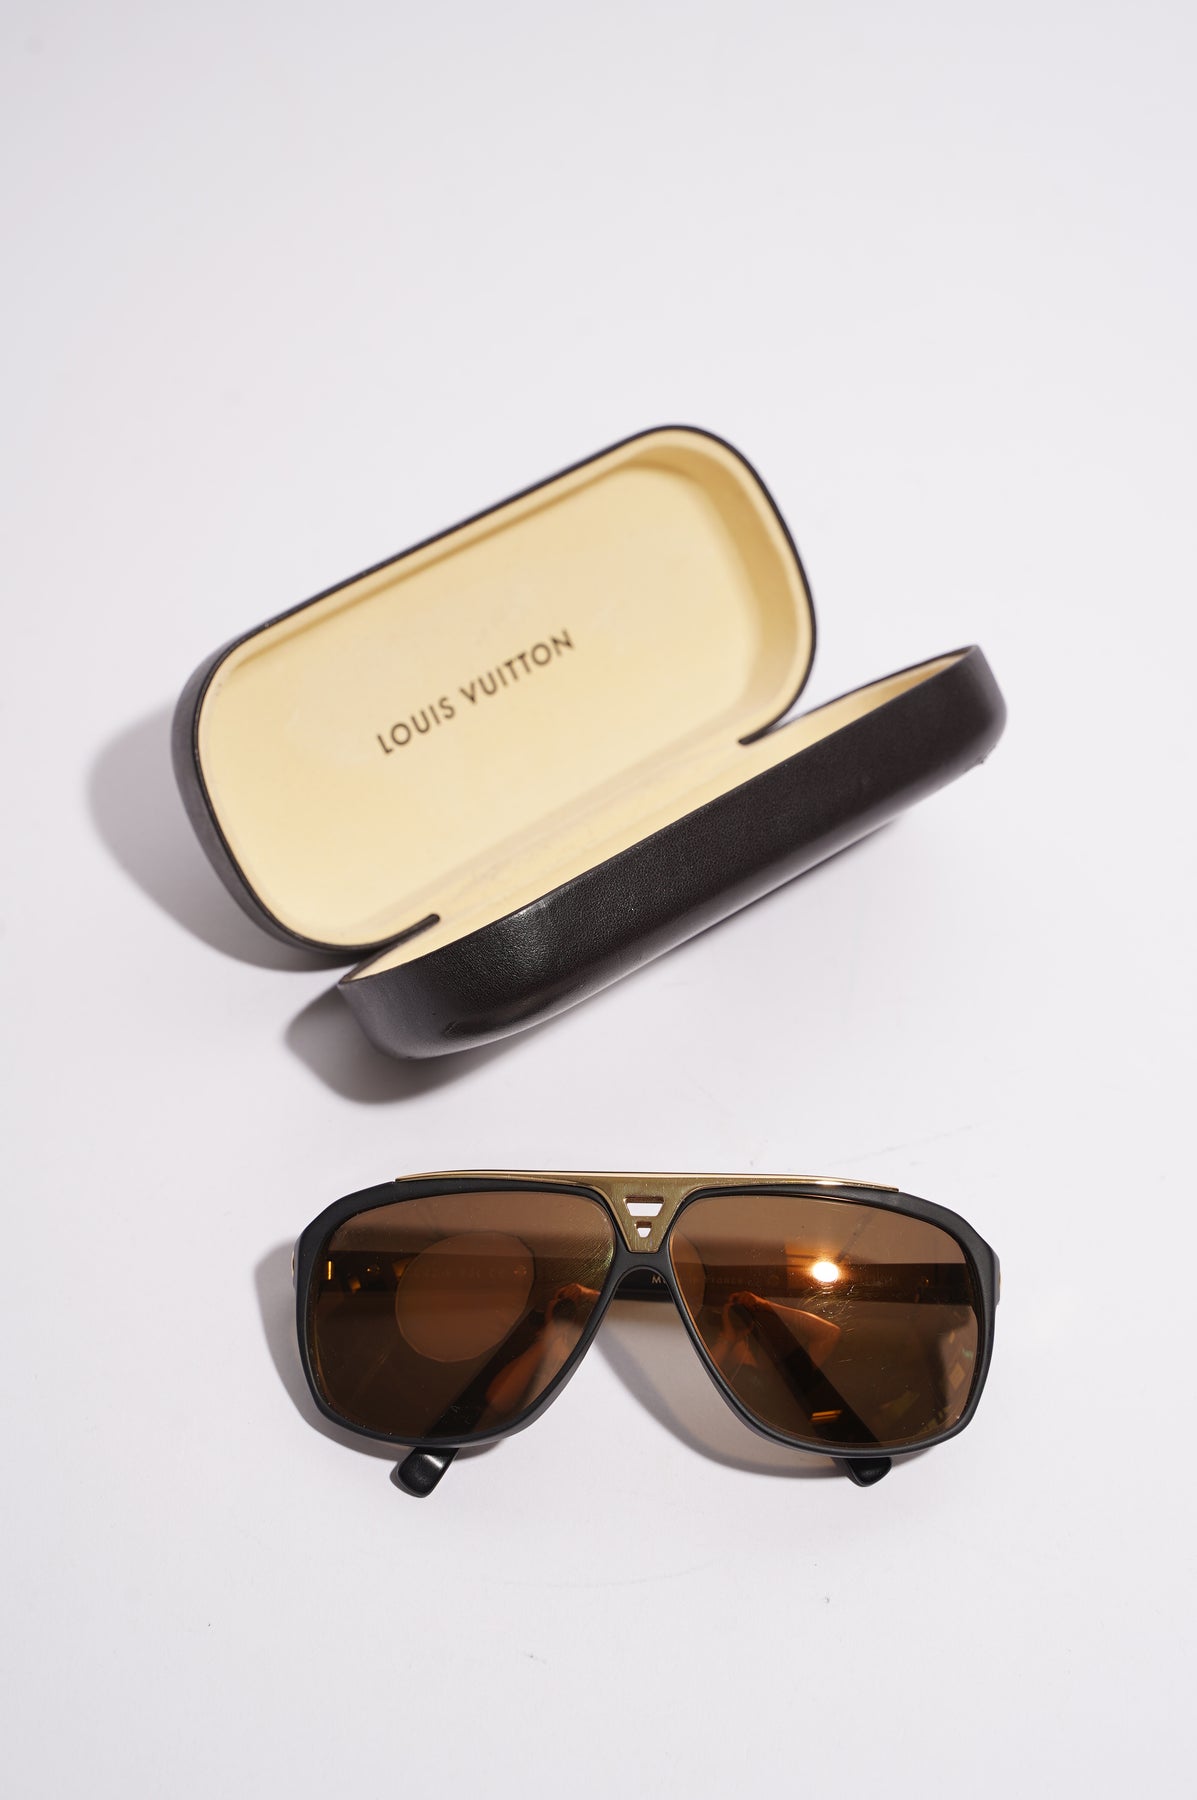 Louis Vuitton Monogram Engraved Evidence Sunglasses black gold Unisex 2d  drop